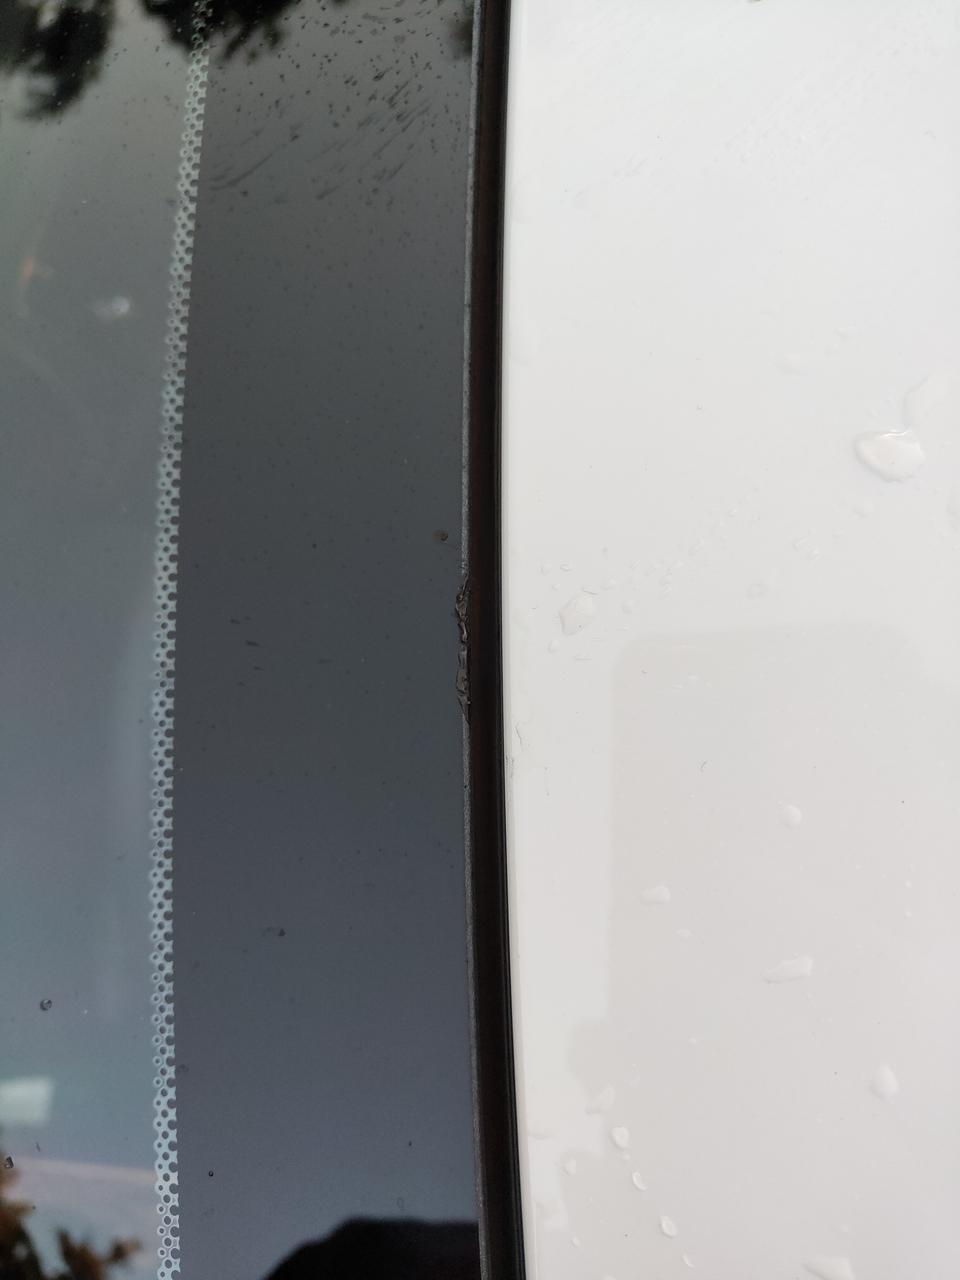 荣威rx5rx5前挡玻璃顶端有被烧融的痕迹，你们的有吗？是质量问题还是出厂就是这样的？有影响吗？